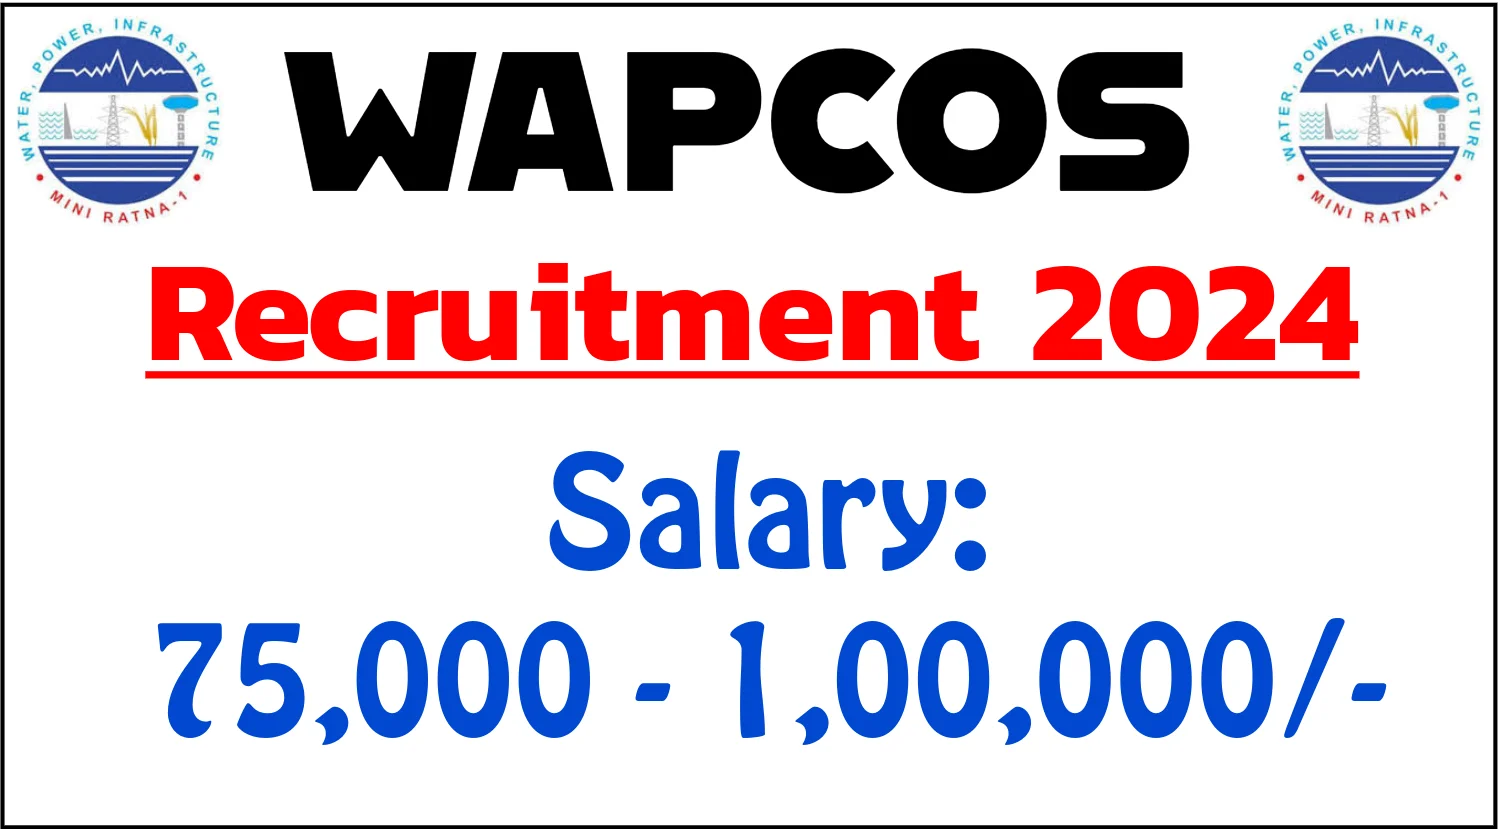 WAPCOS Manager Recruitment 2024